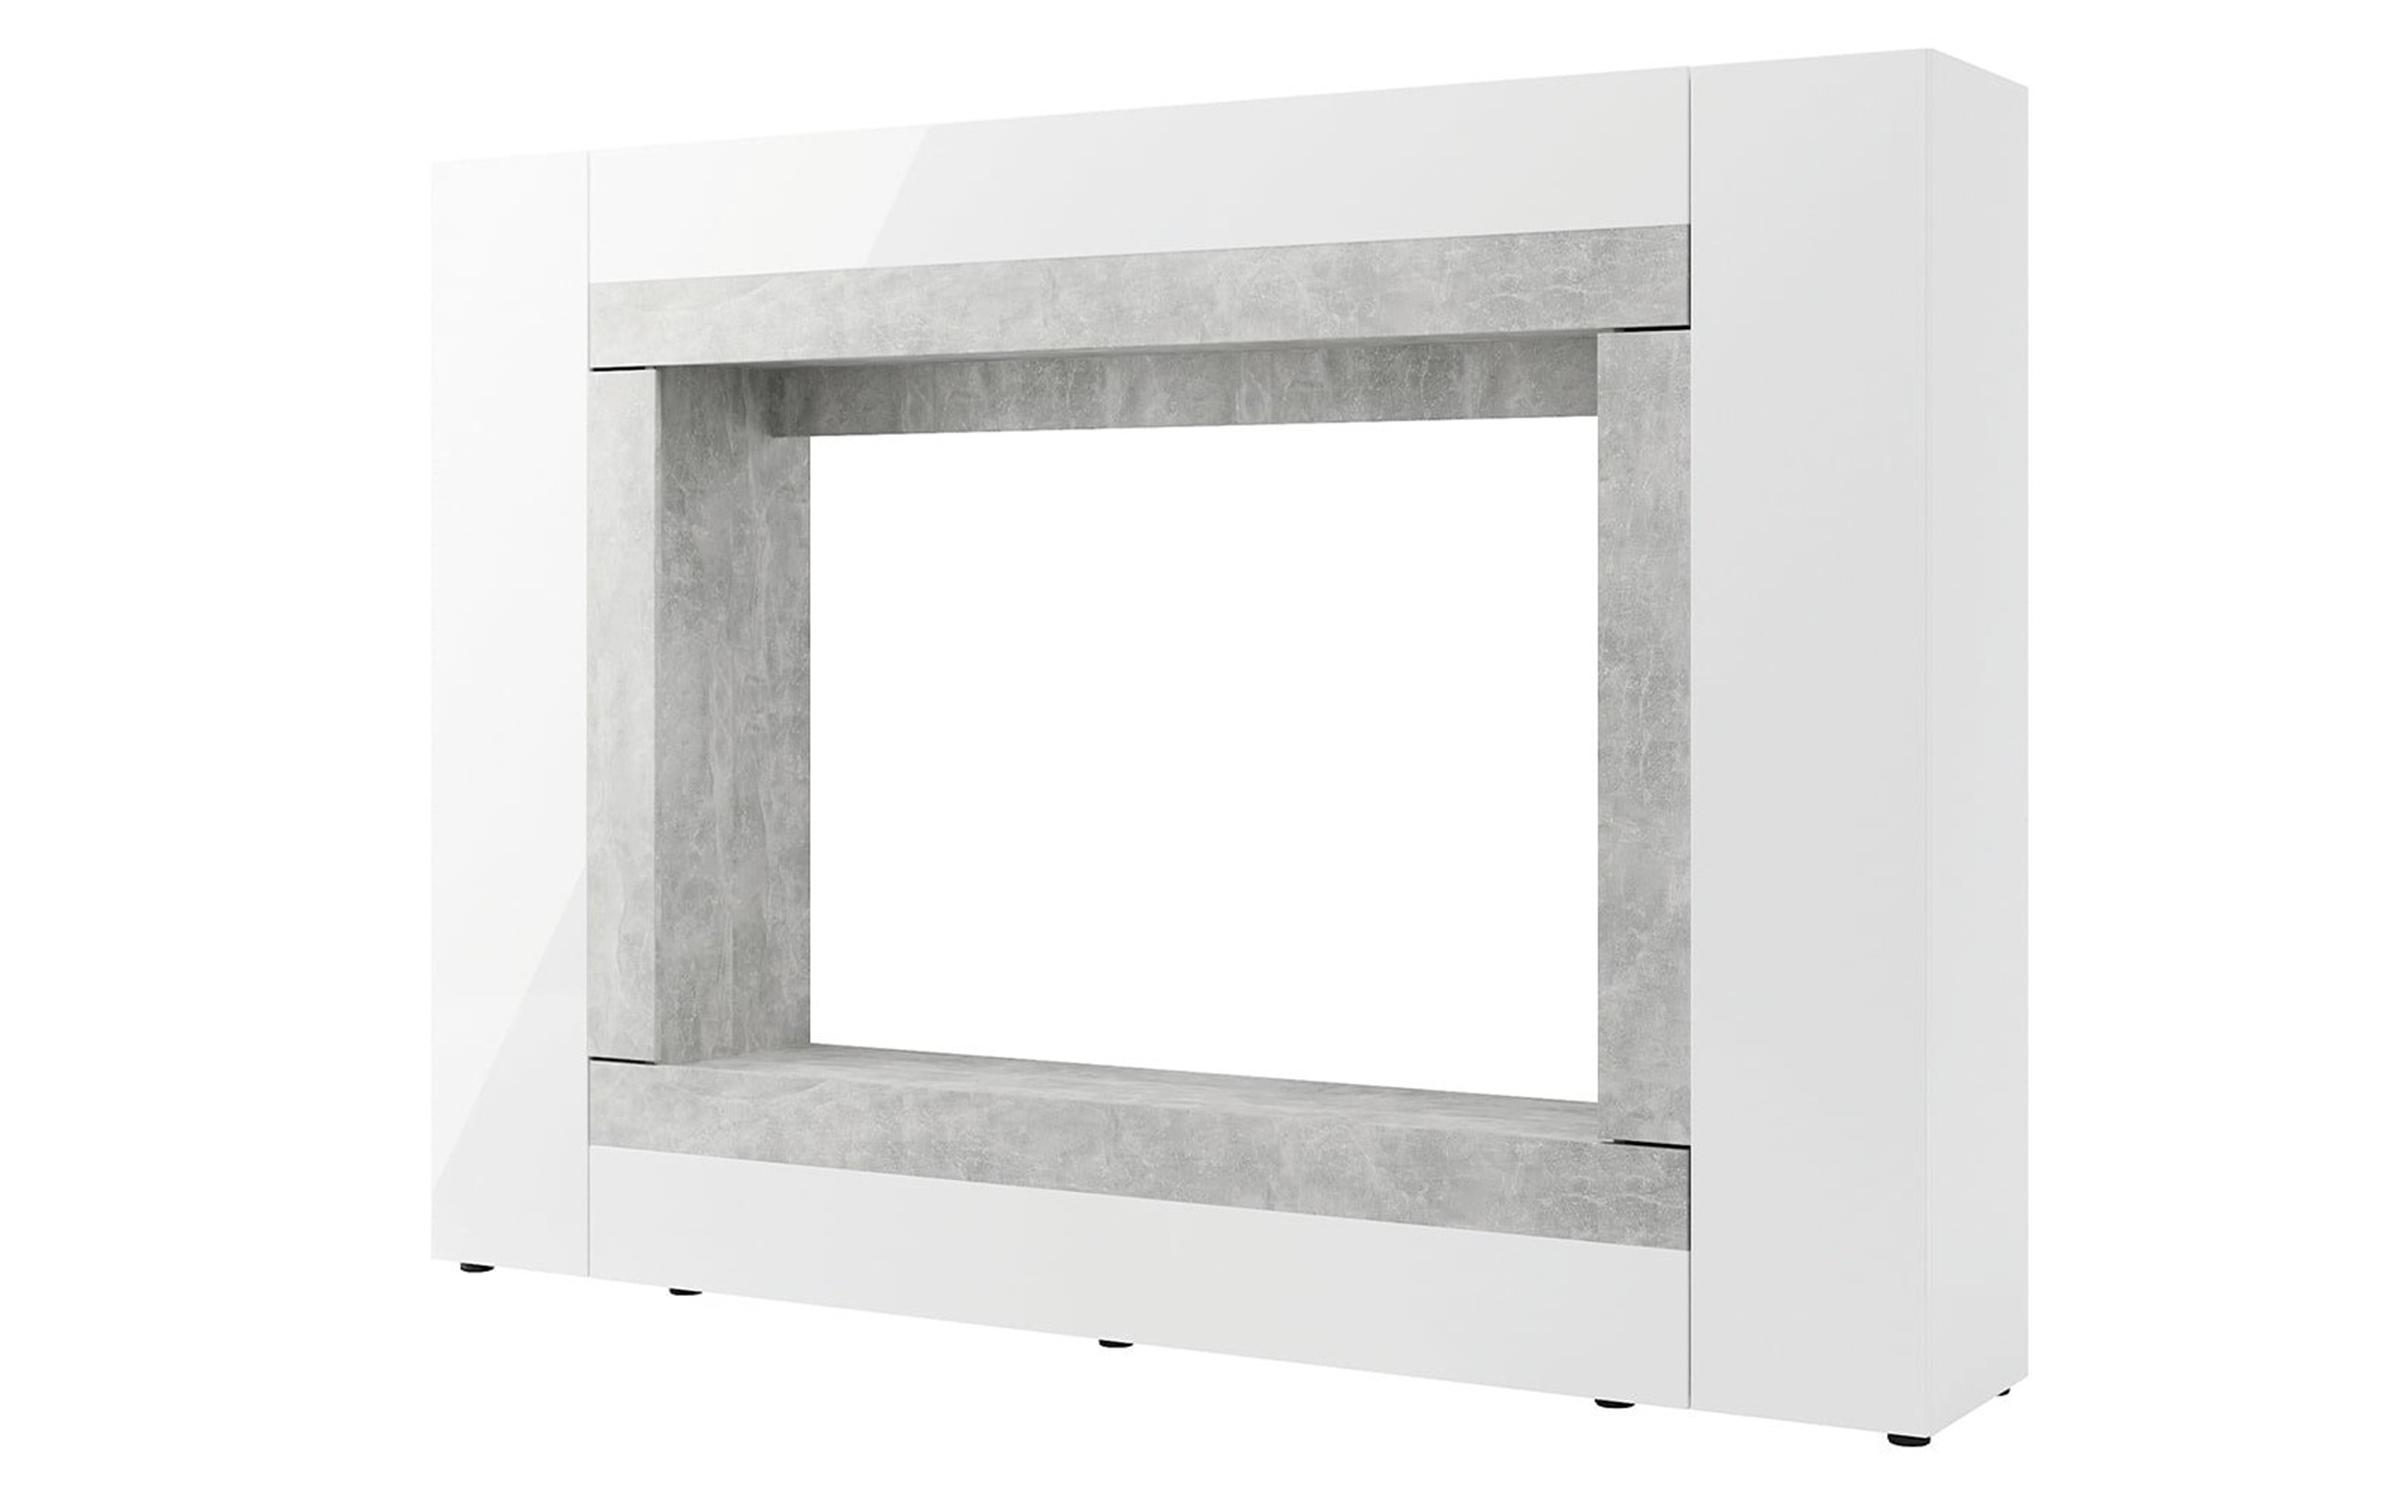 Σύνθεση Loris, λευκό γυαλιστερό  + beton  2